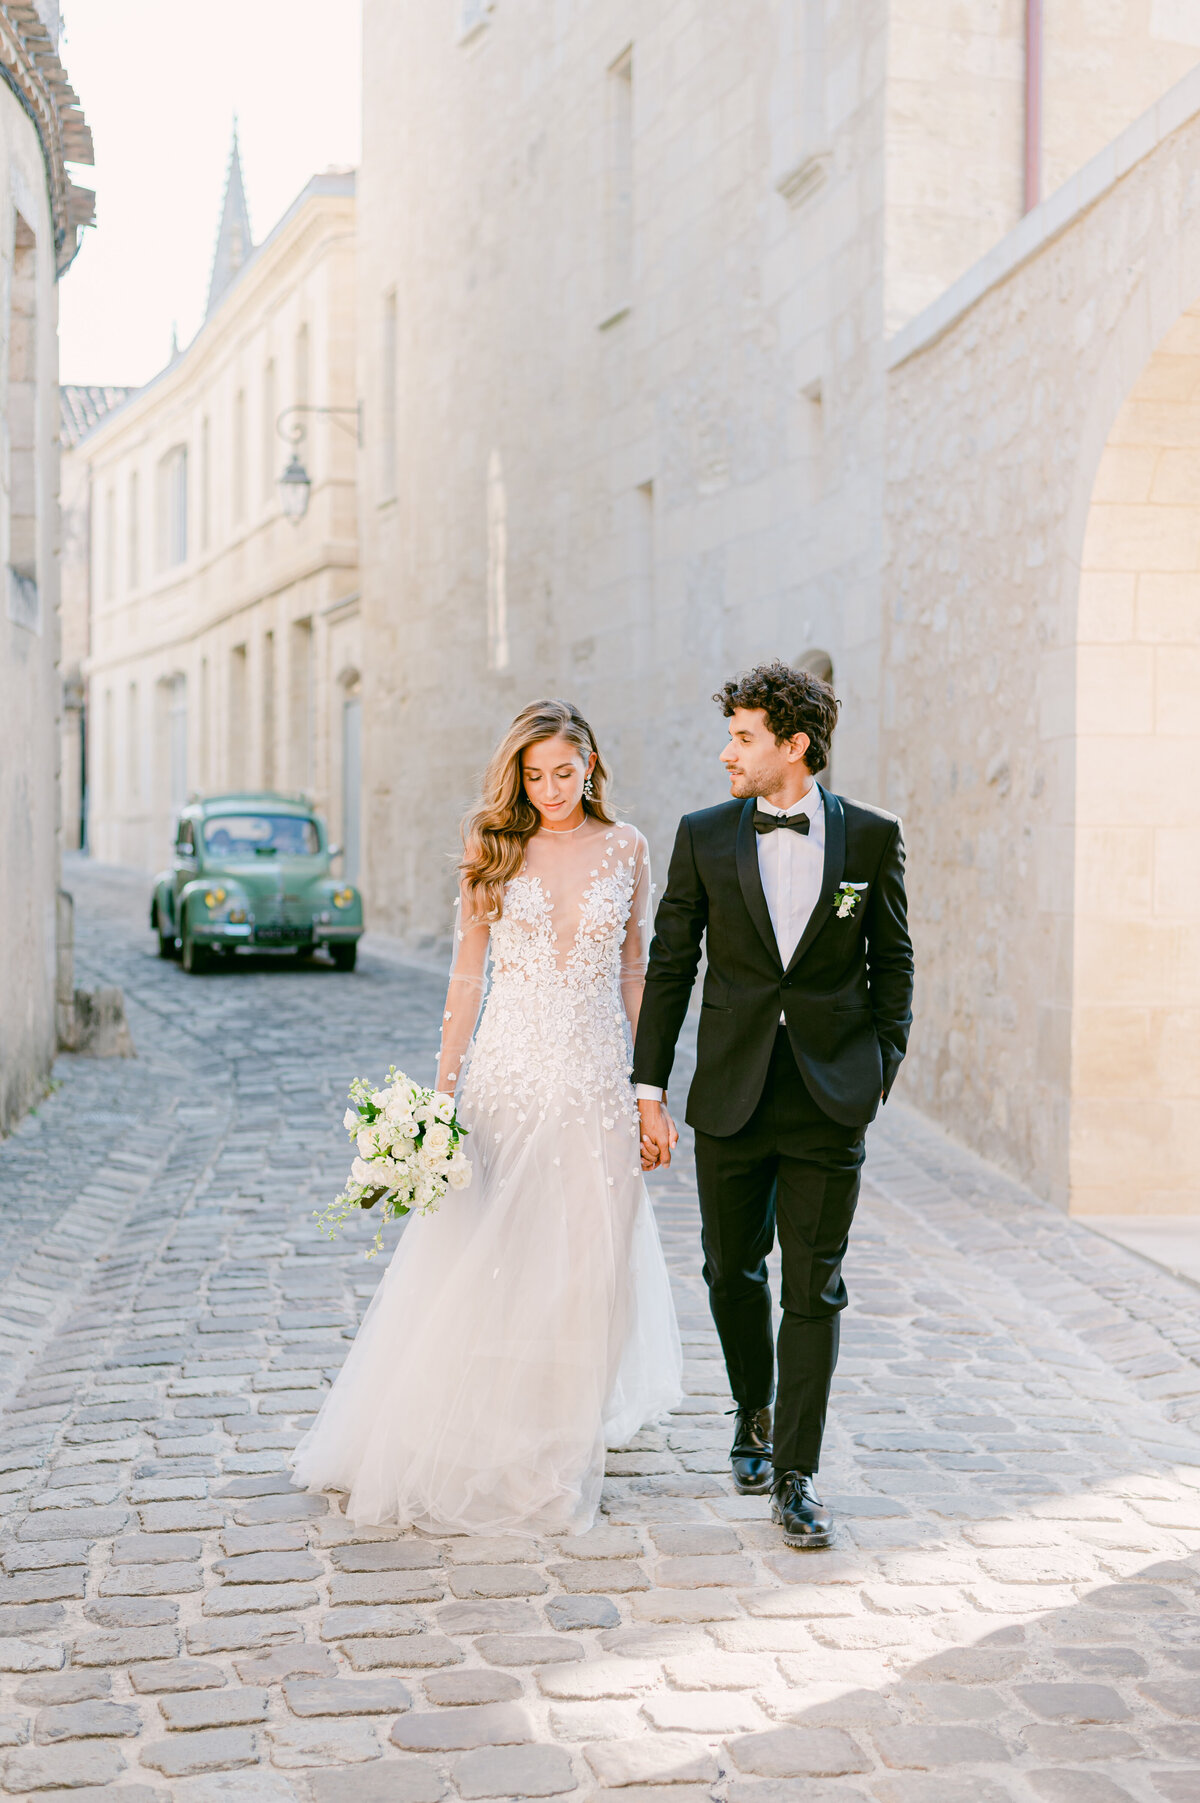 wedding in France Chateau wedding ideas4